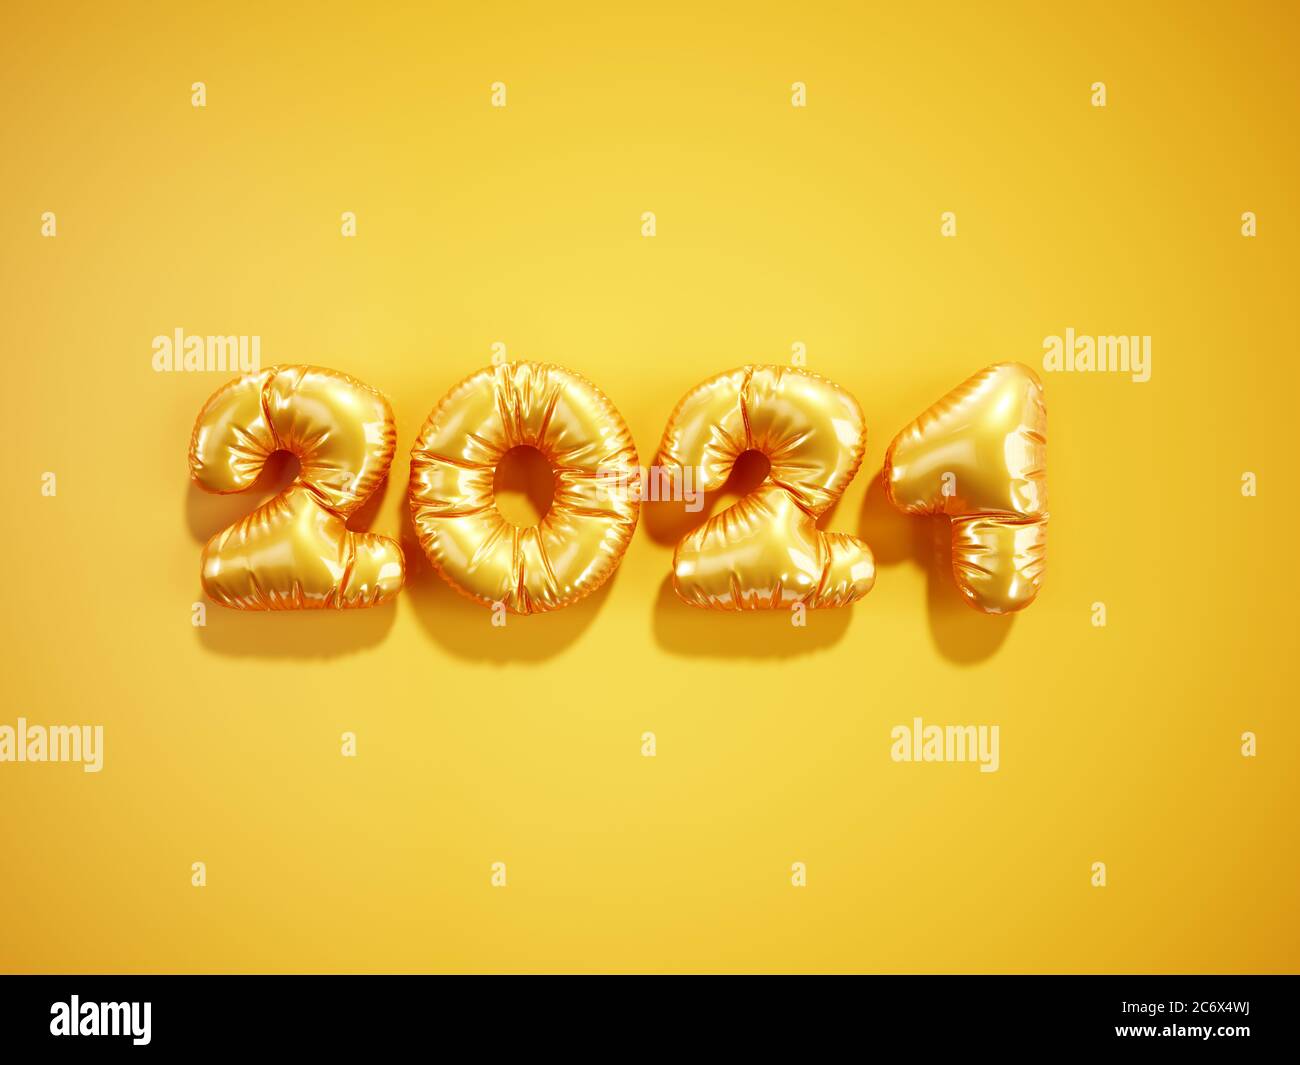 Noël et bonne année 2021 ballon orange numéros dorés sur fond jaune. Design du logo du nouvel an 2021 en 3d. Banque D'Images